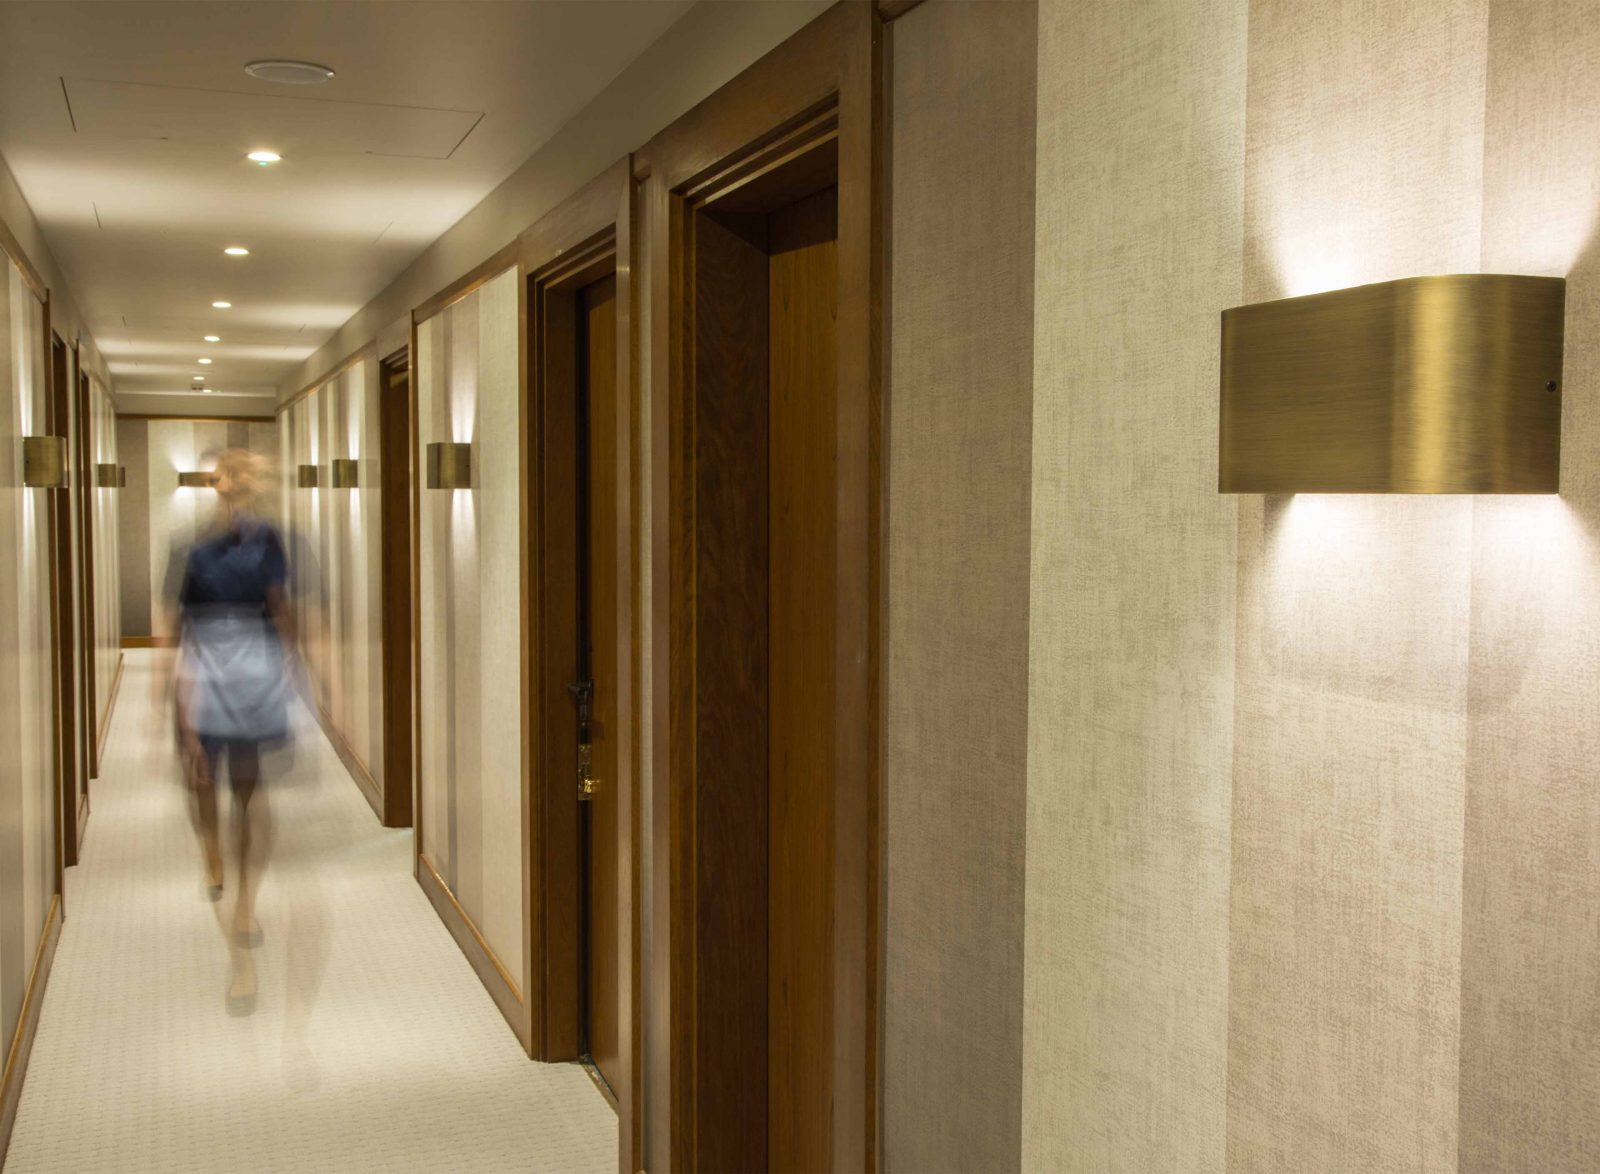 Hotel Corridor Hallway Wall Luminaires Lighting Design Consultants Studio N